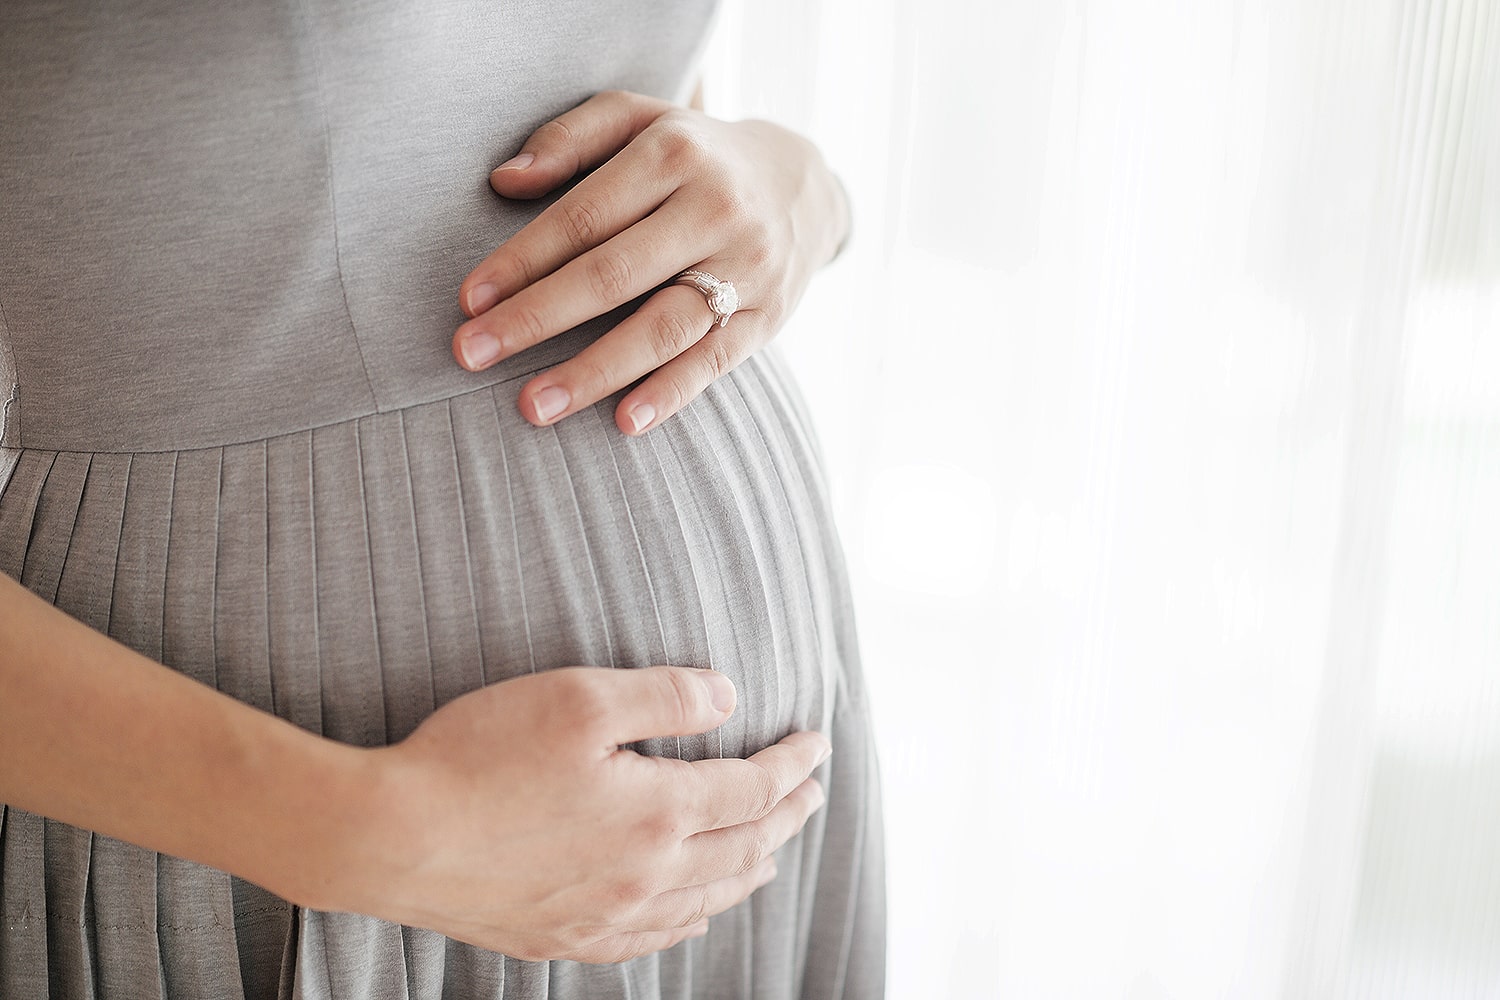 Sonha com gravidez - O que isso pode significar?